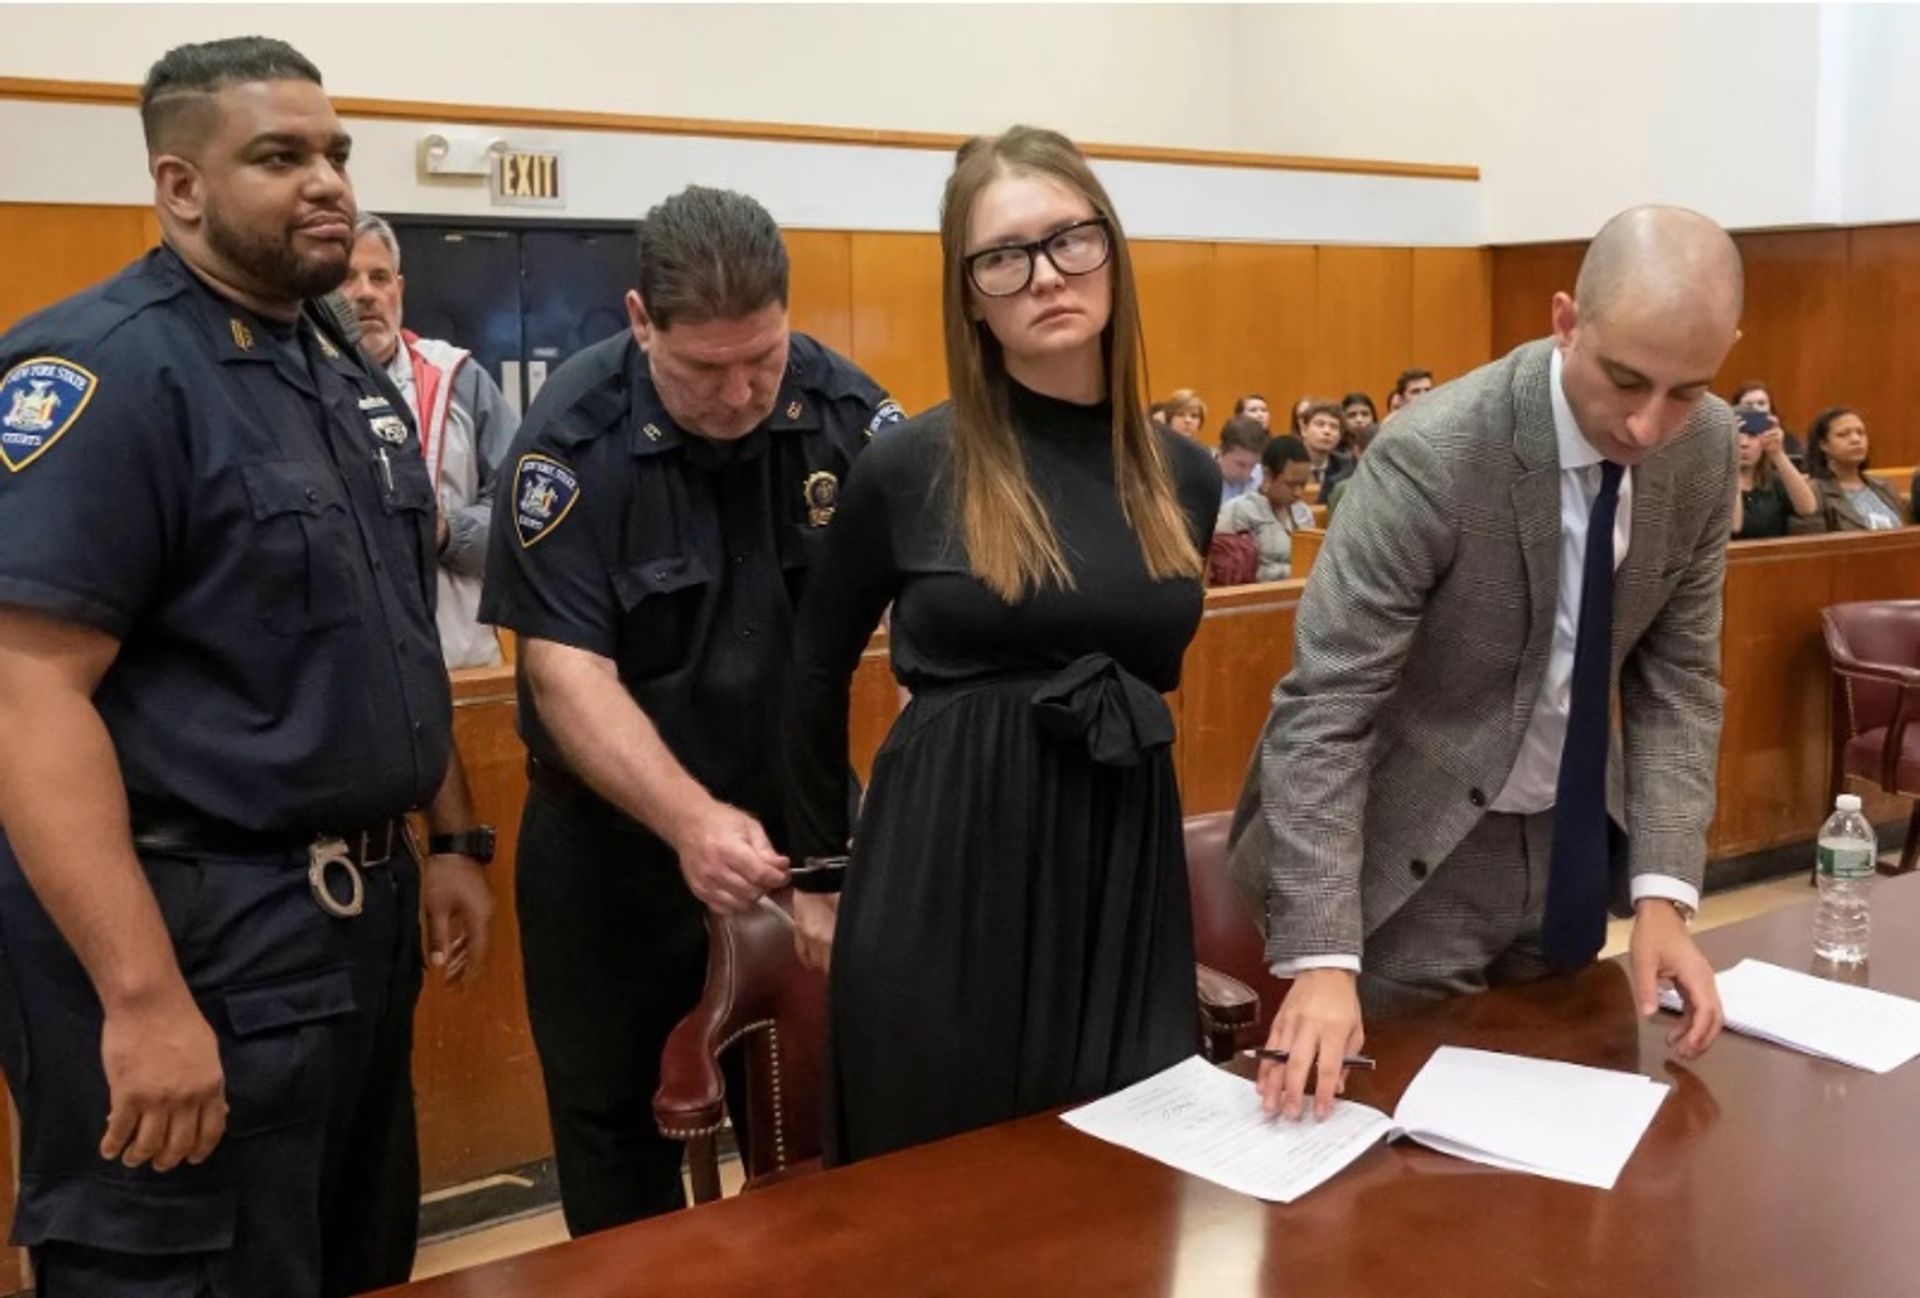 אנה סורוקין במהלך גזר הדין שלה שניתן בבית המשפט במנהטן ב-9 במאי 2019

צילום: סטיבן הירש/פול דרך רויטרס